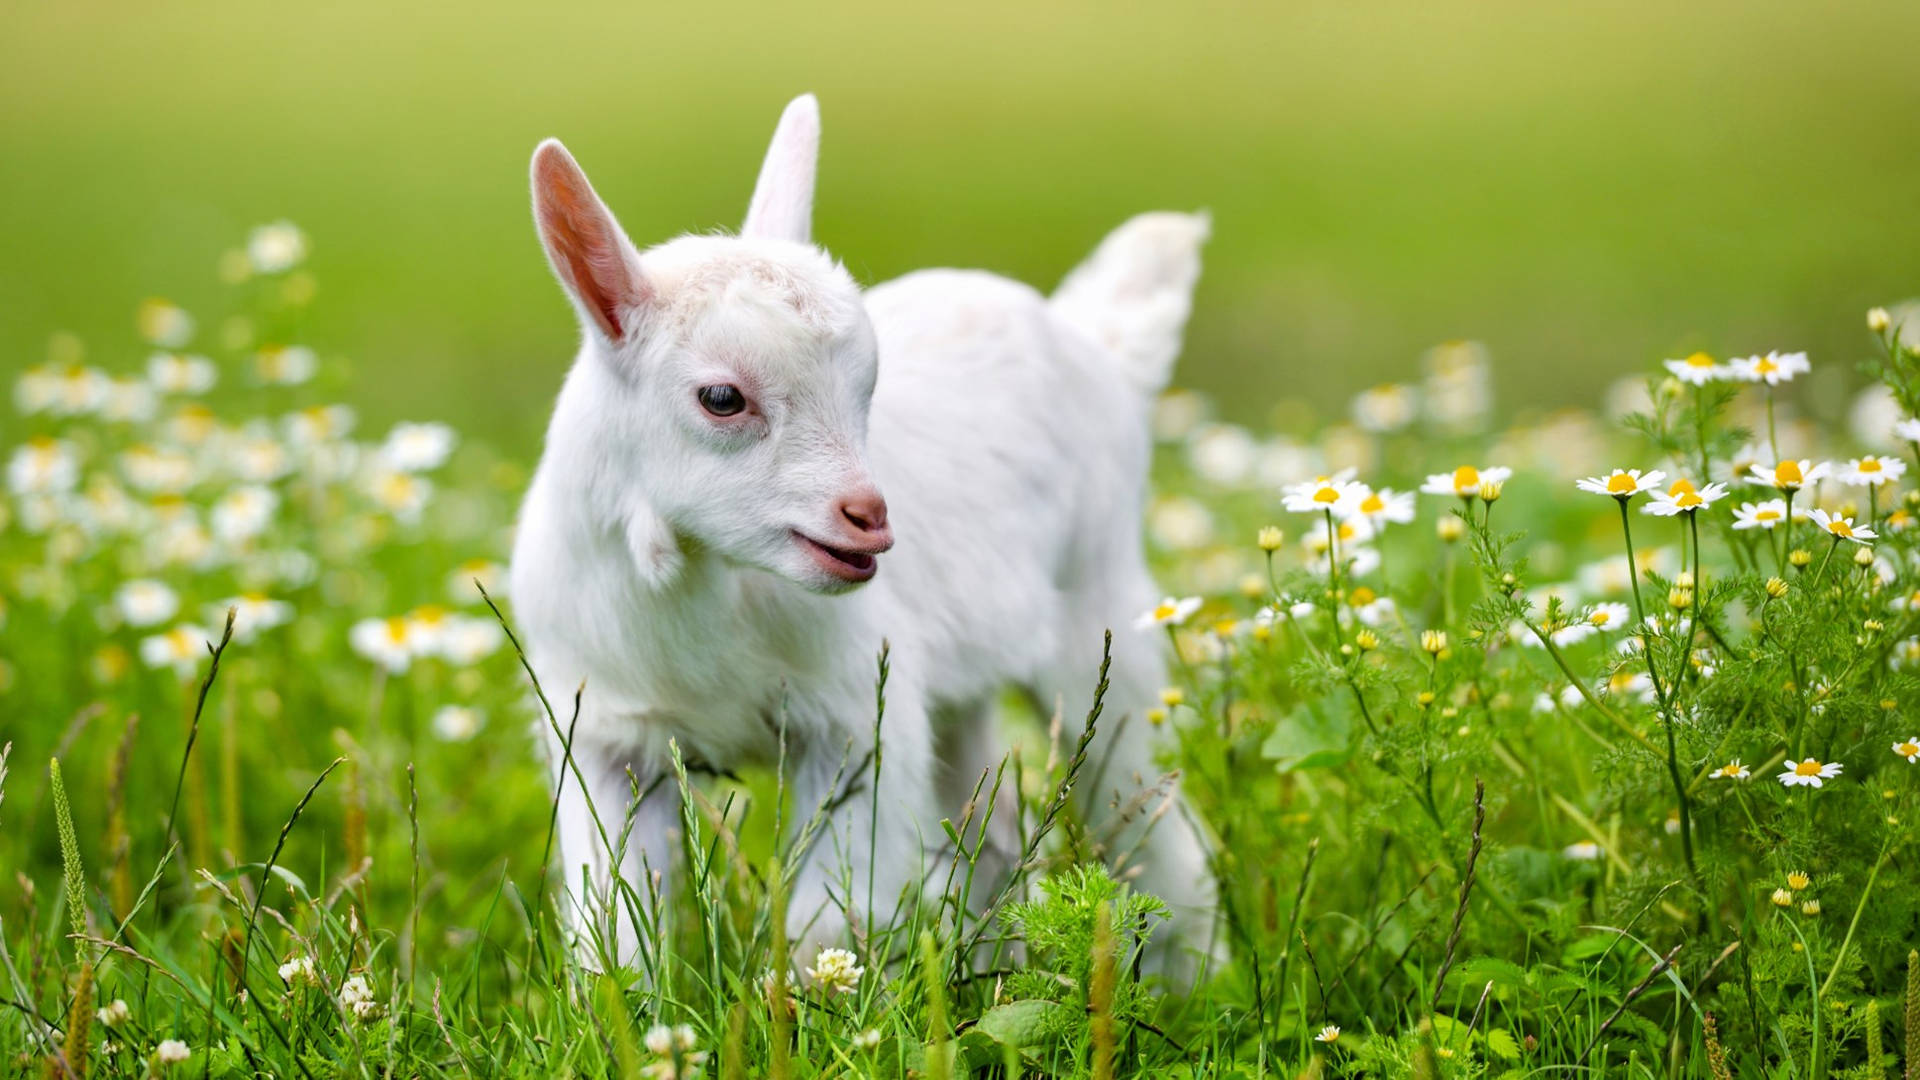 Baby Goat Among White Flowers Wallpaper